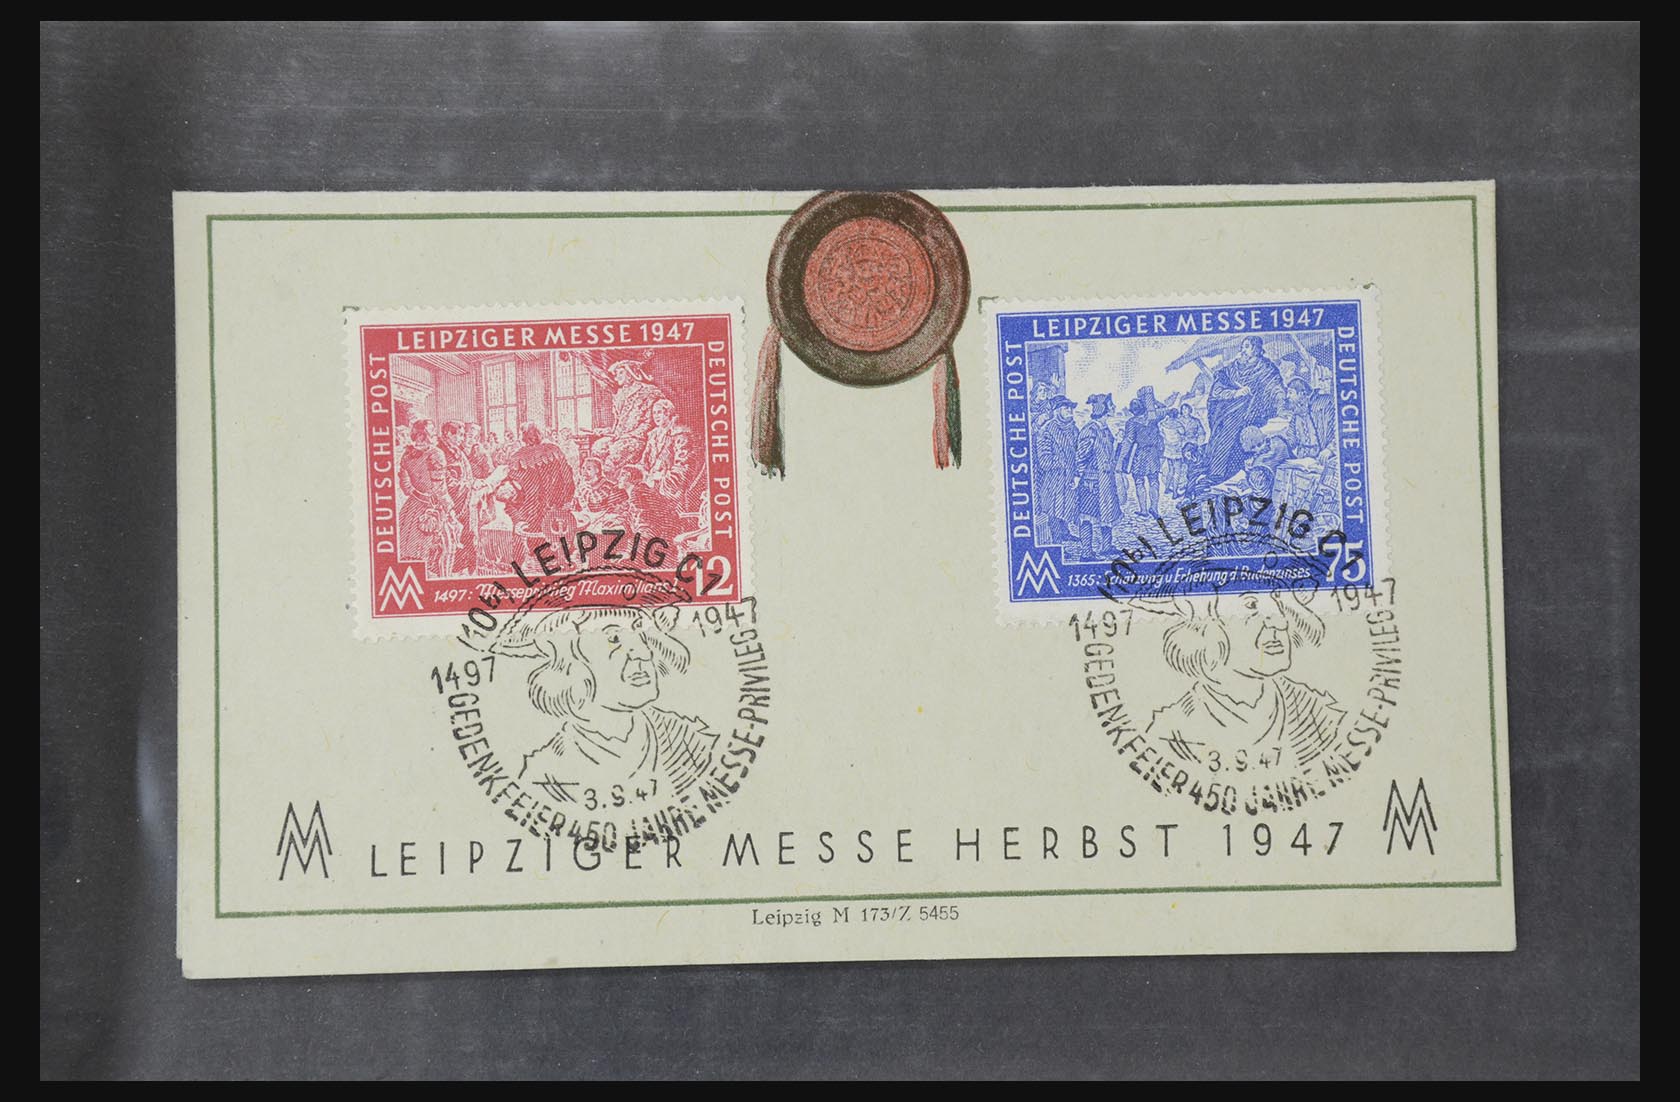 31581 002 - 31581 Duitsland brieven en FDC's 1945-1981.